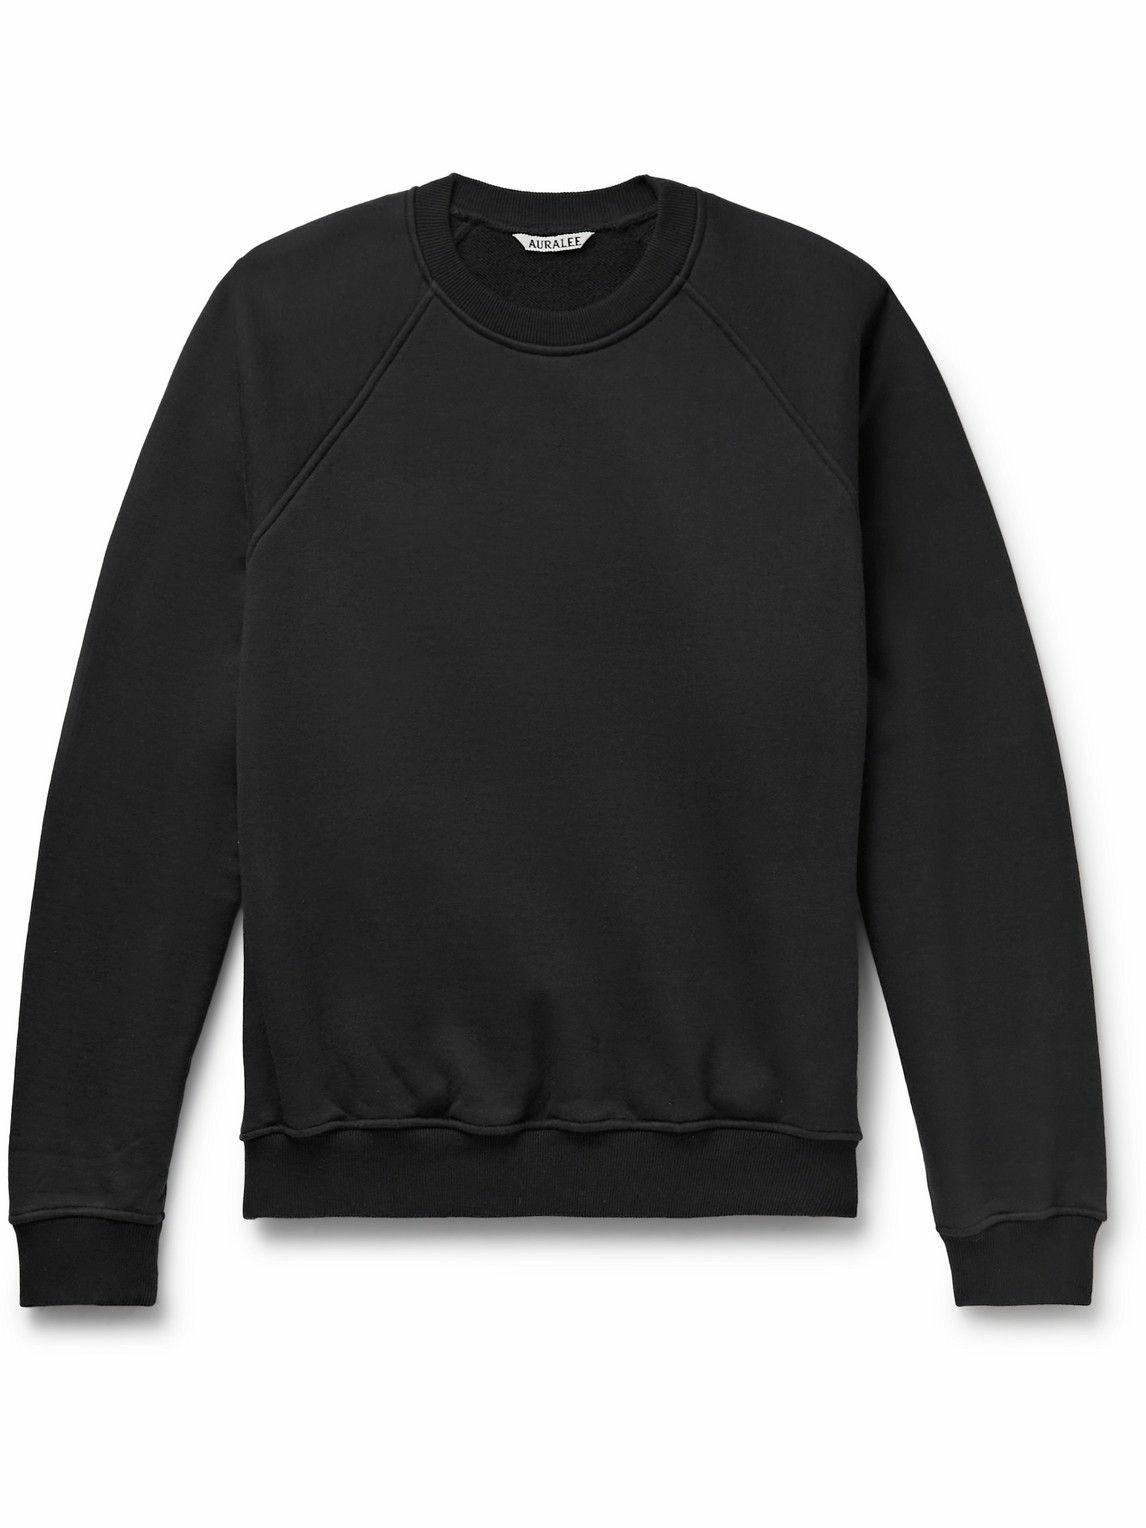 Auralee - Cotton-Jersey Sweatshirt - Black Auralee